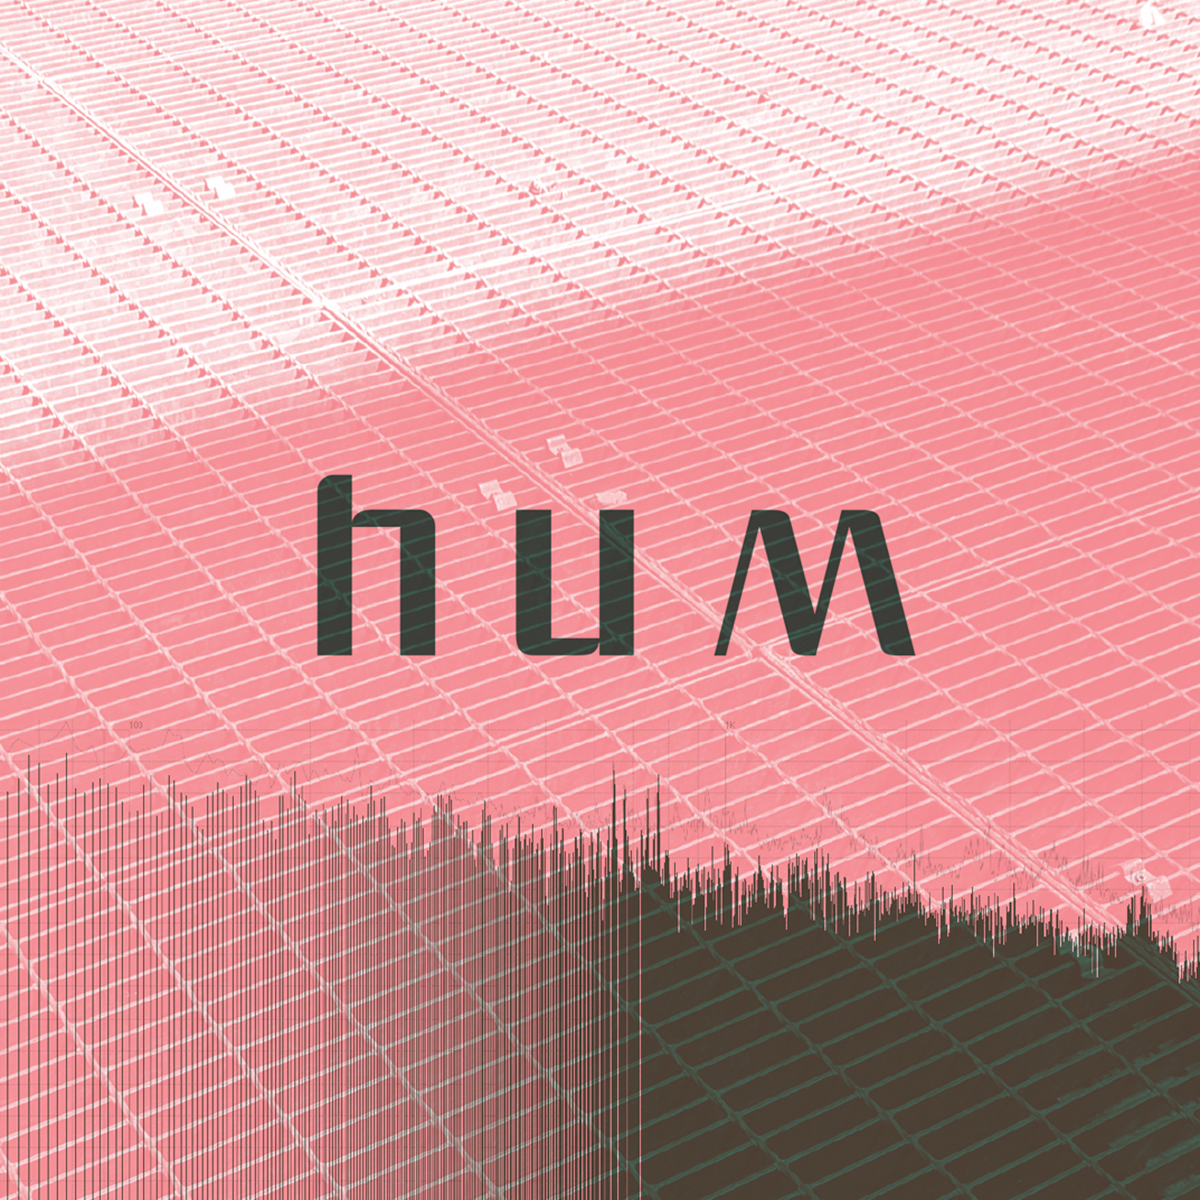 hum